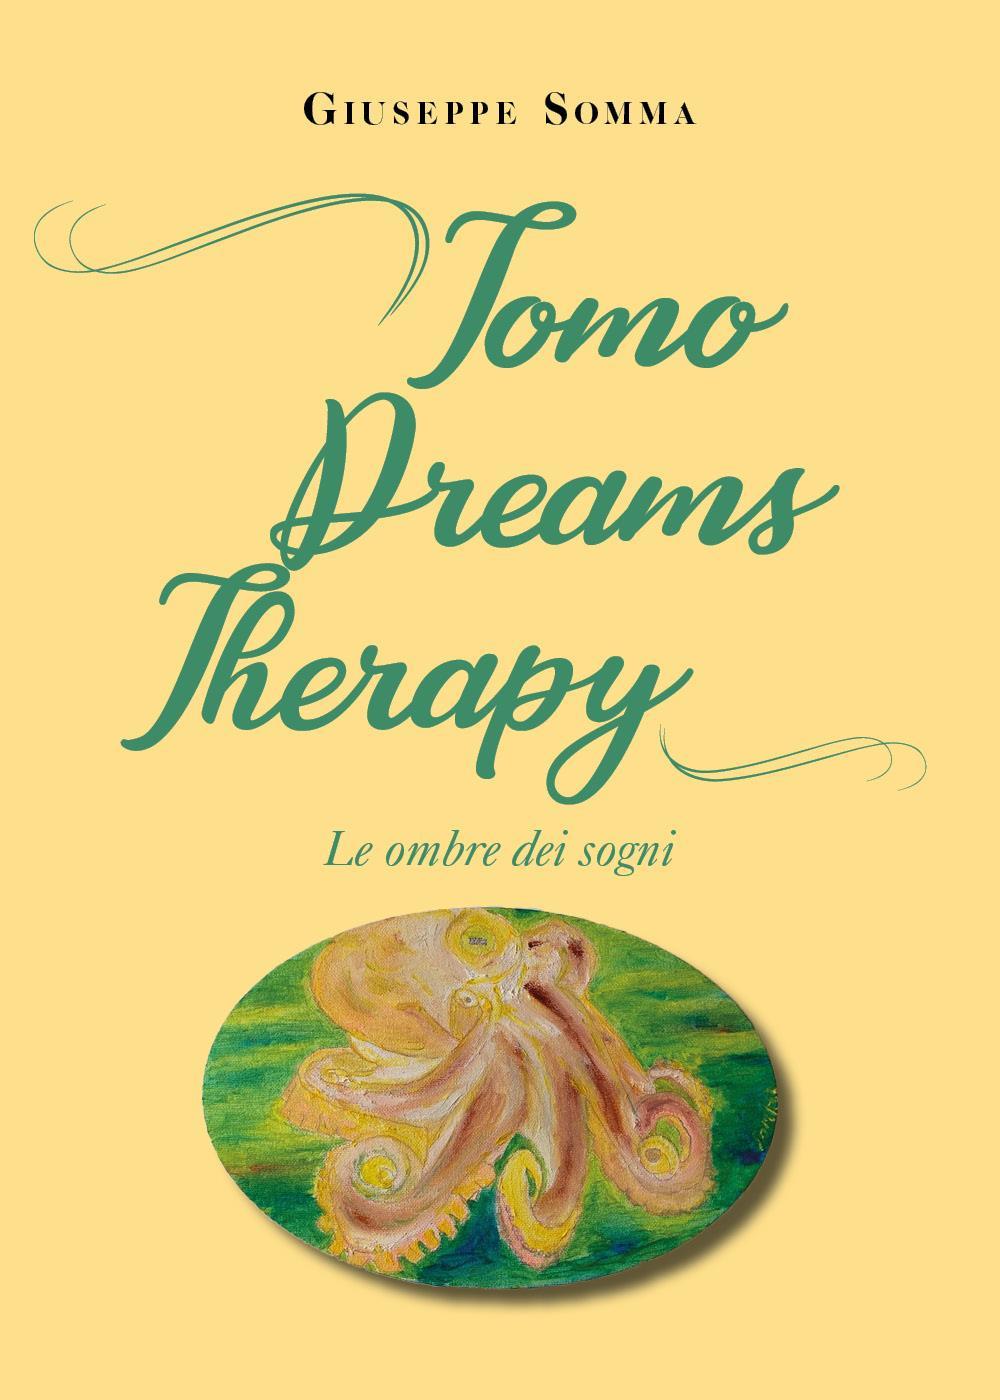 Tomo dreams therapy. Le ombre dei sogni